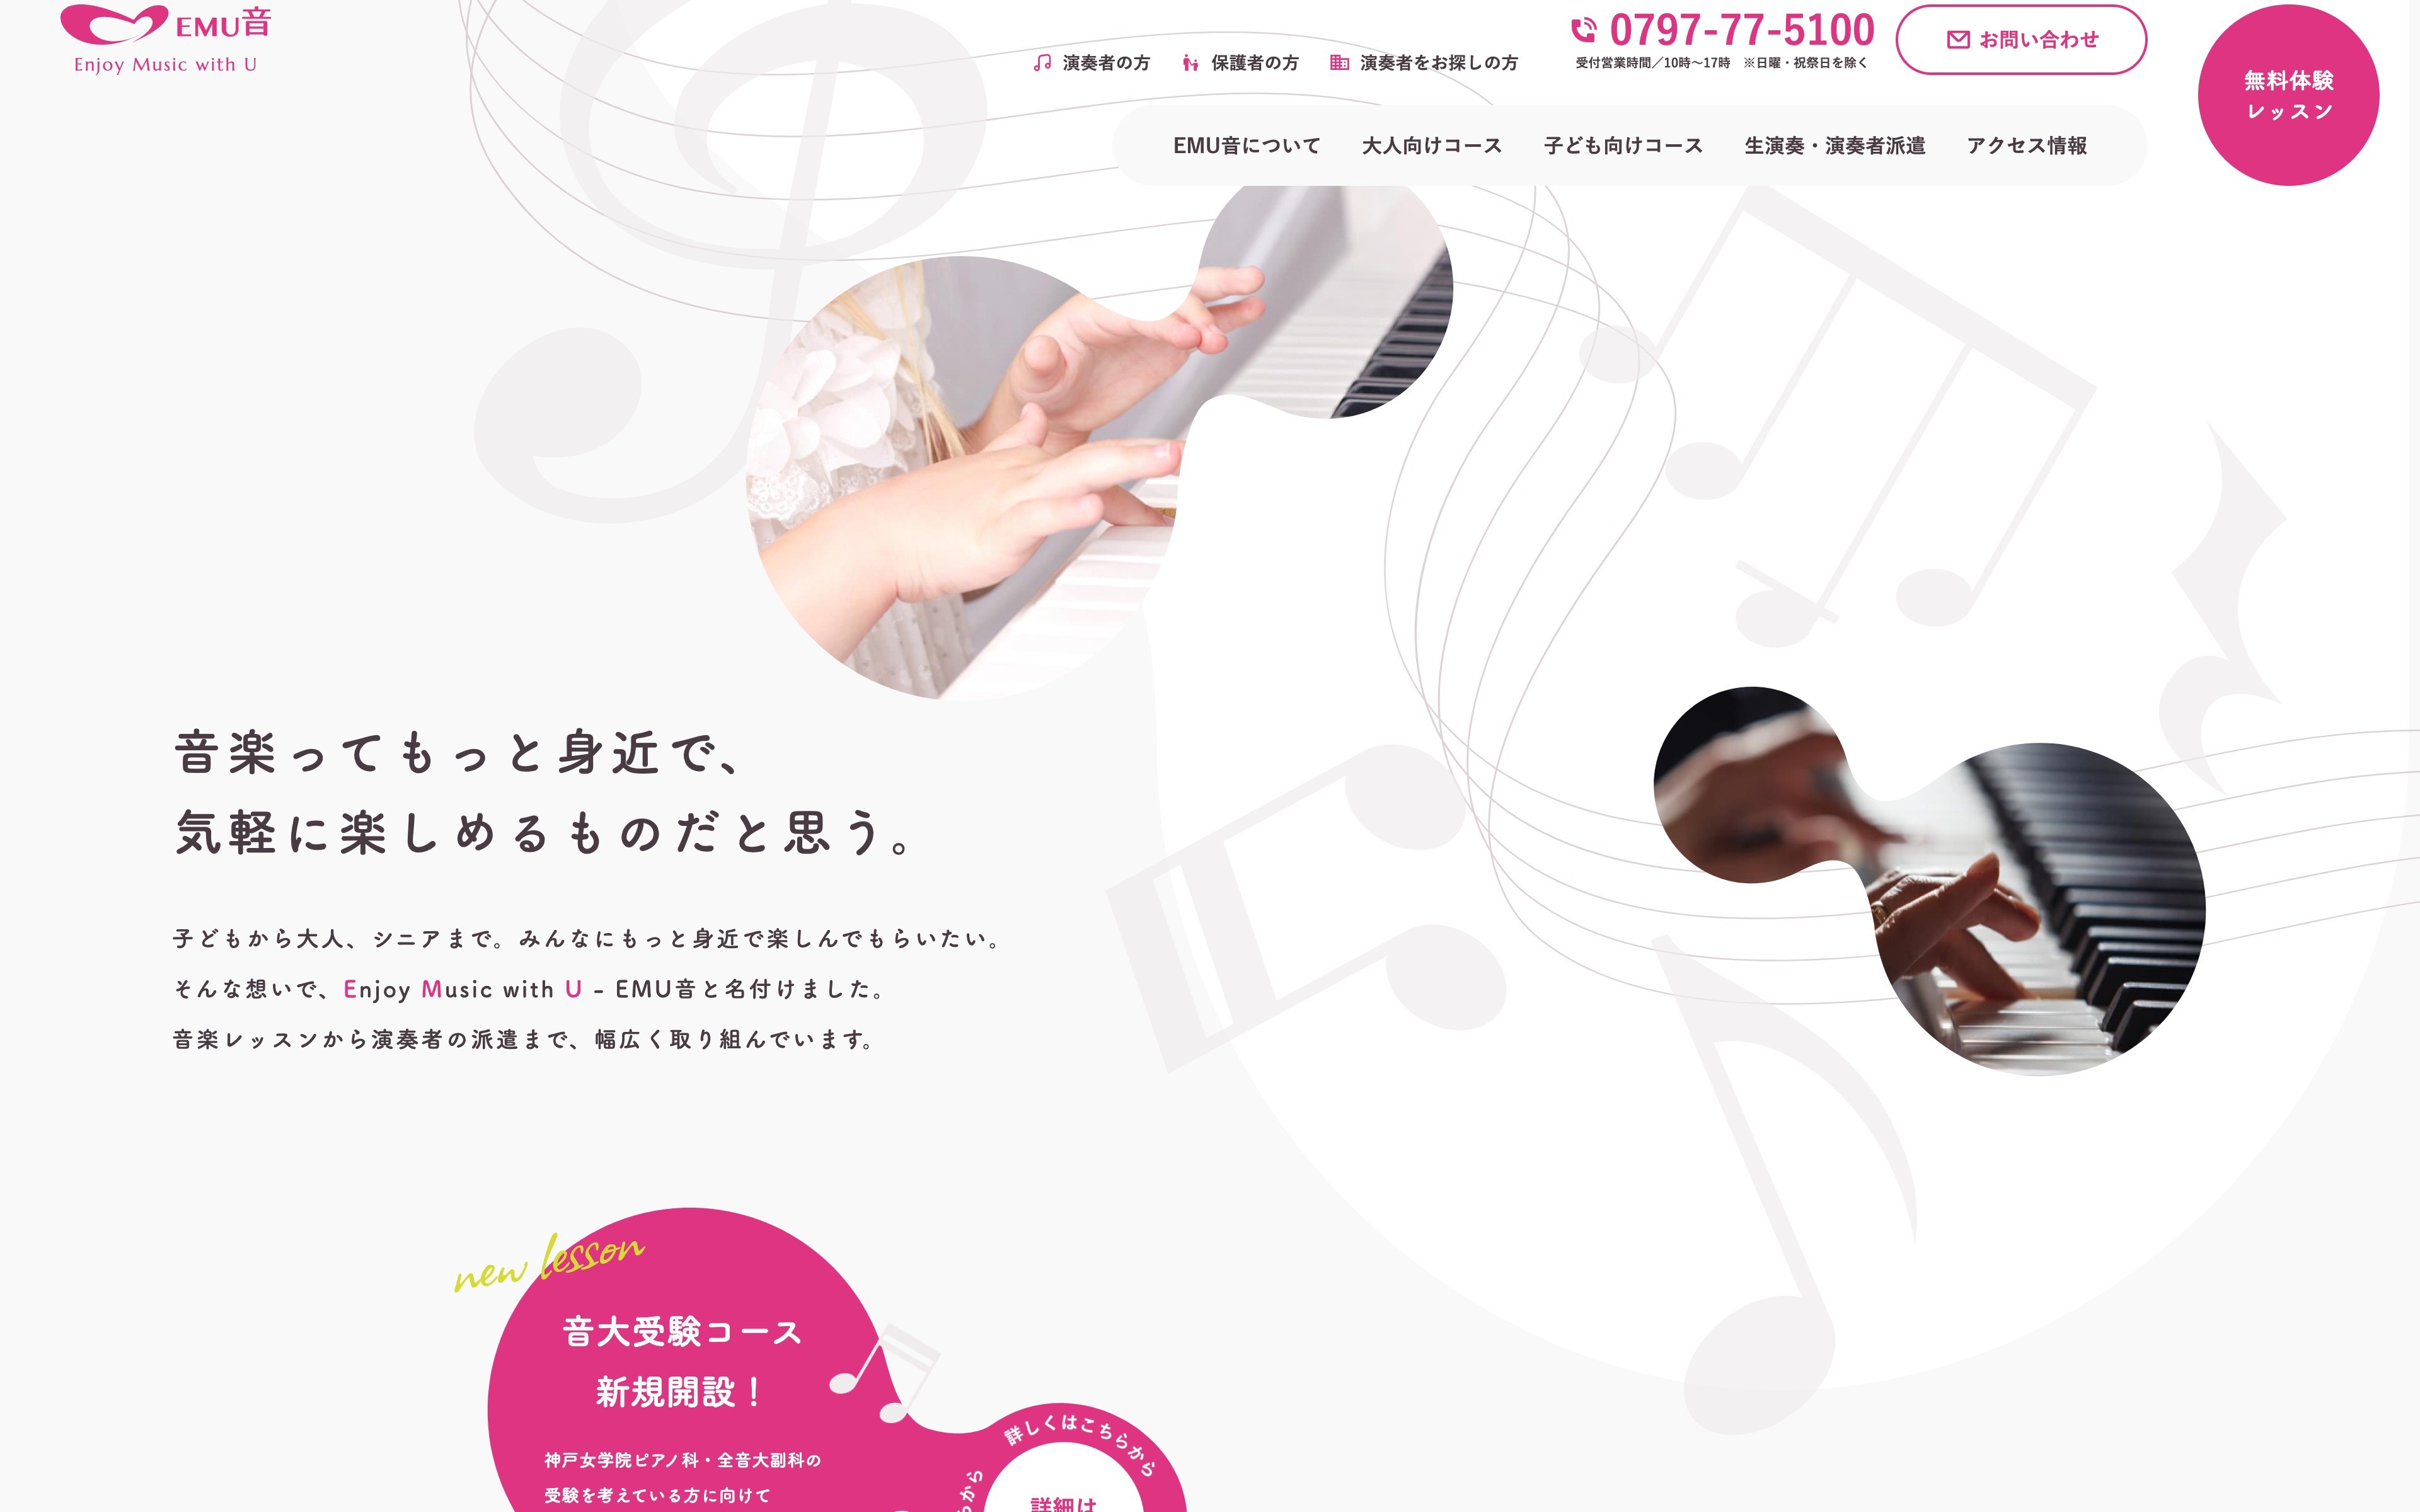 宝塚の音楽教室 - EMU音 | Web制作・ホームページ制作実績 | Web幹事